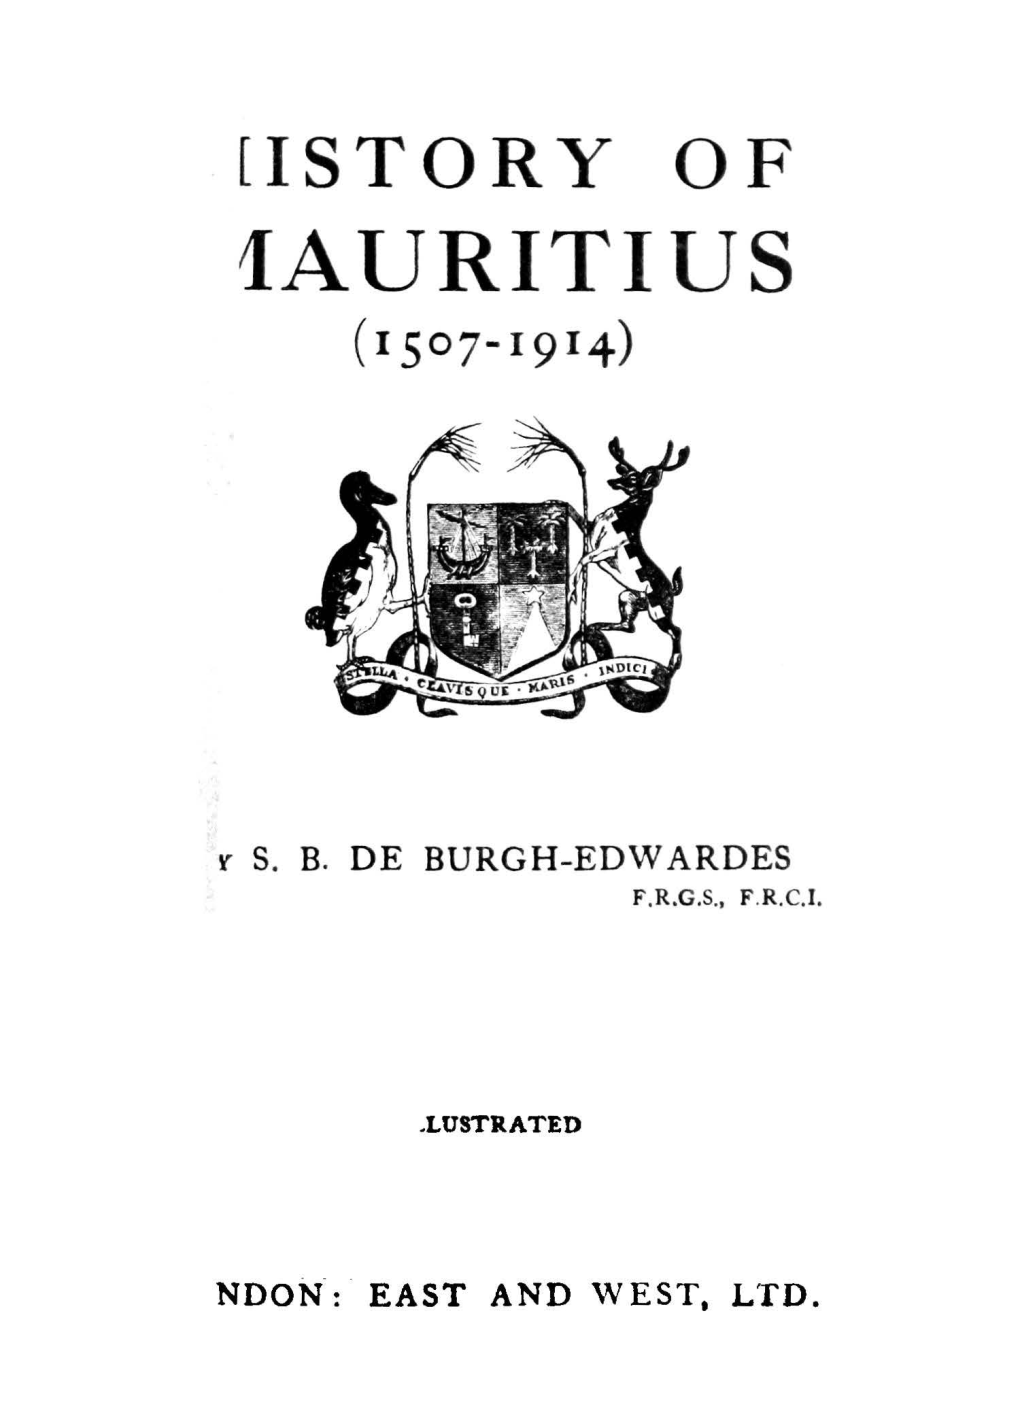 1Auritius (1507-1914)